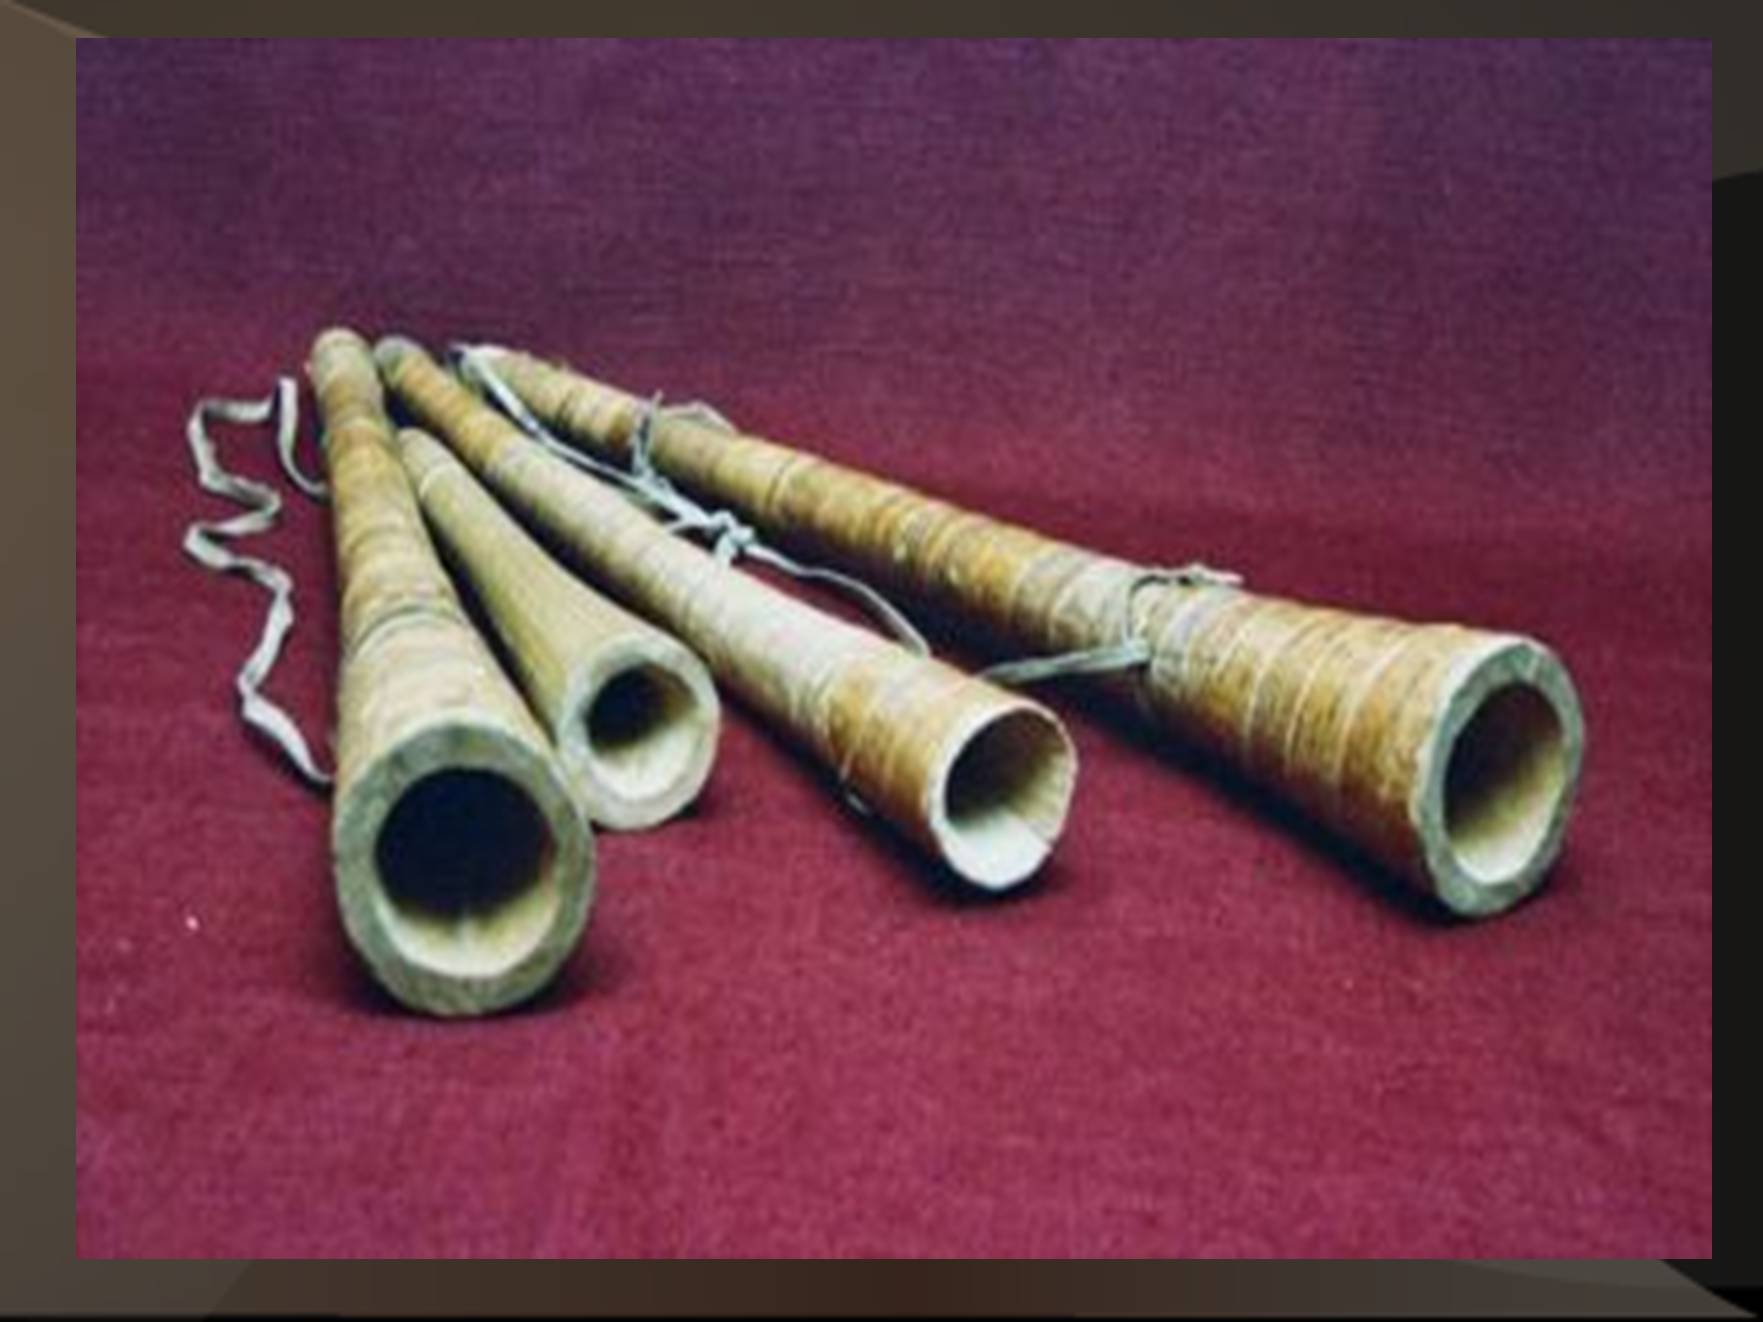 Пастушья труба духовой музыкальный инструмент